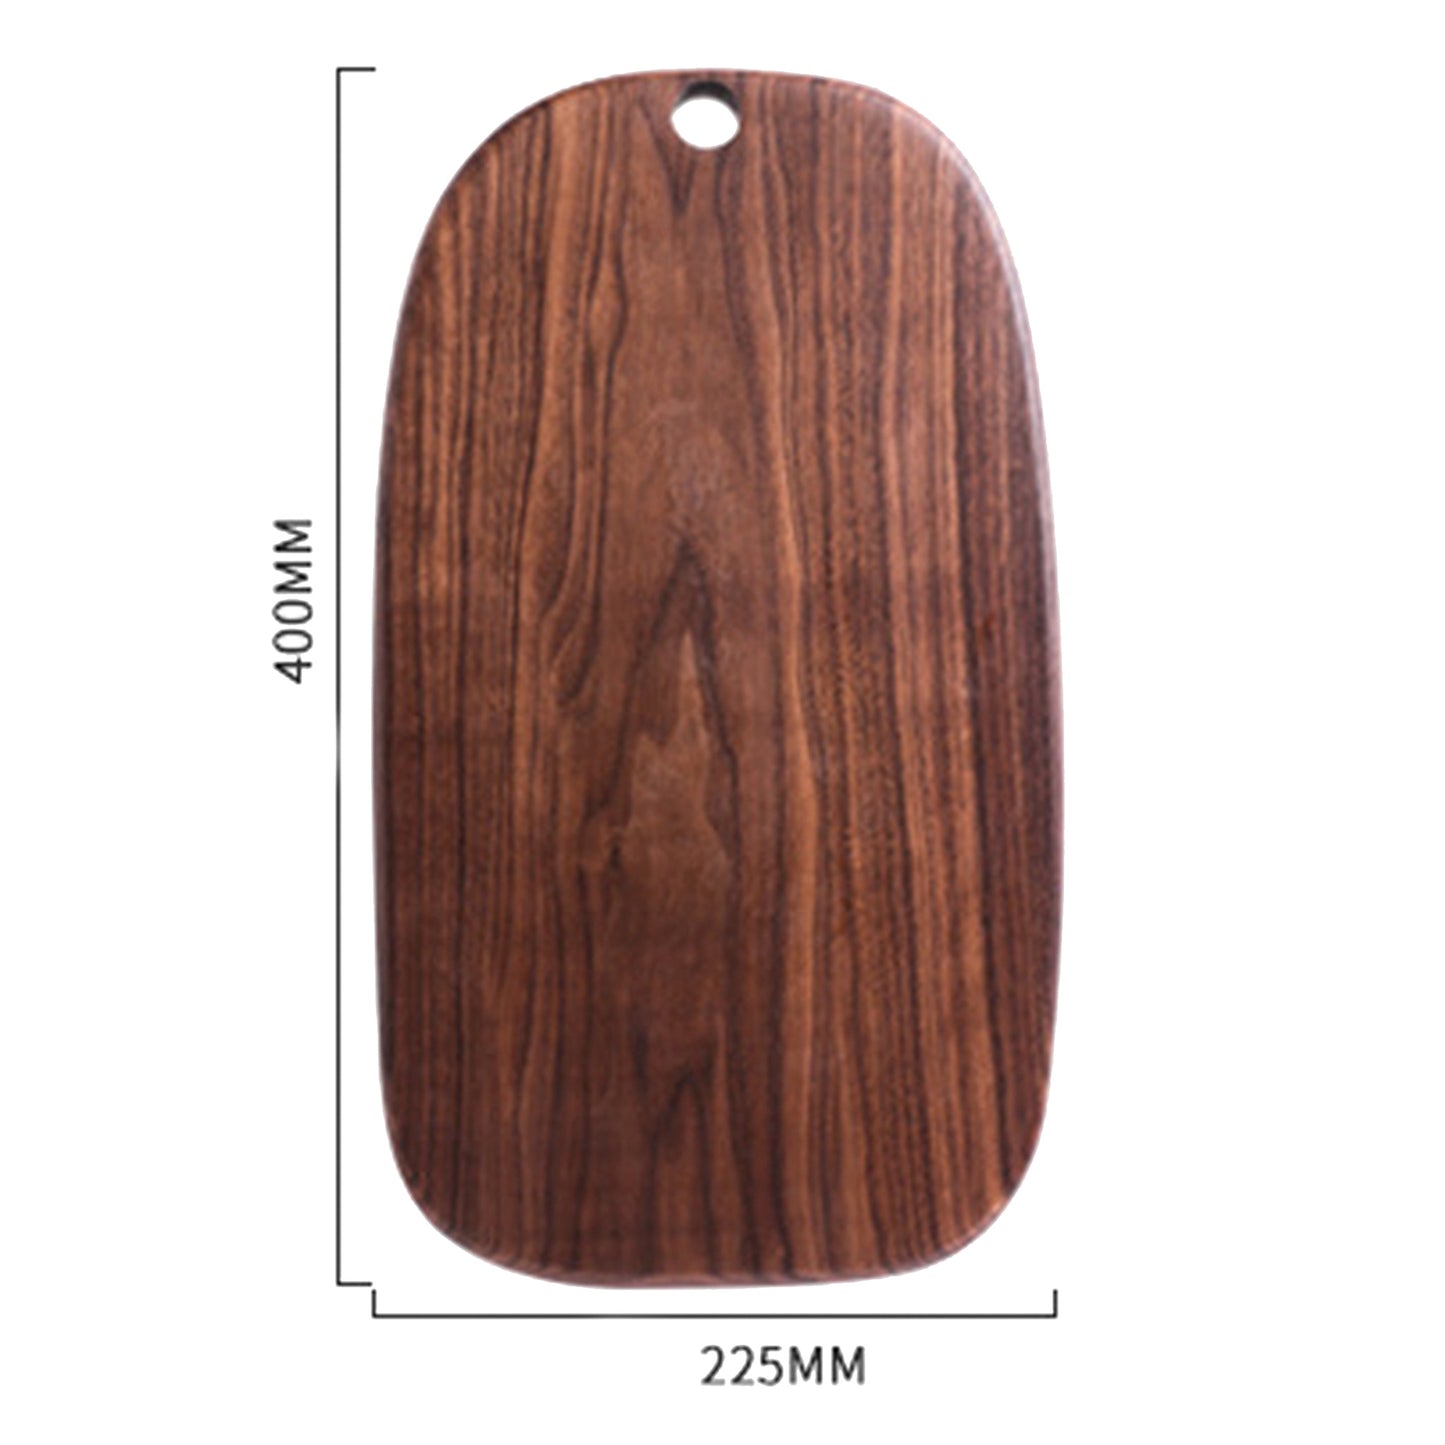 Oval Walnut Wood Cutting Board